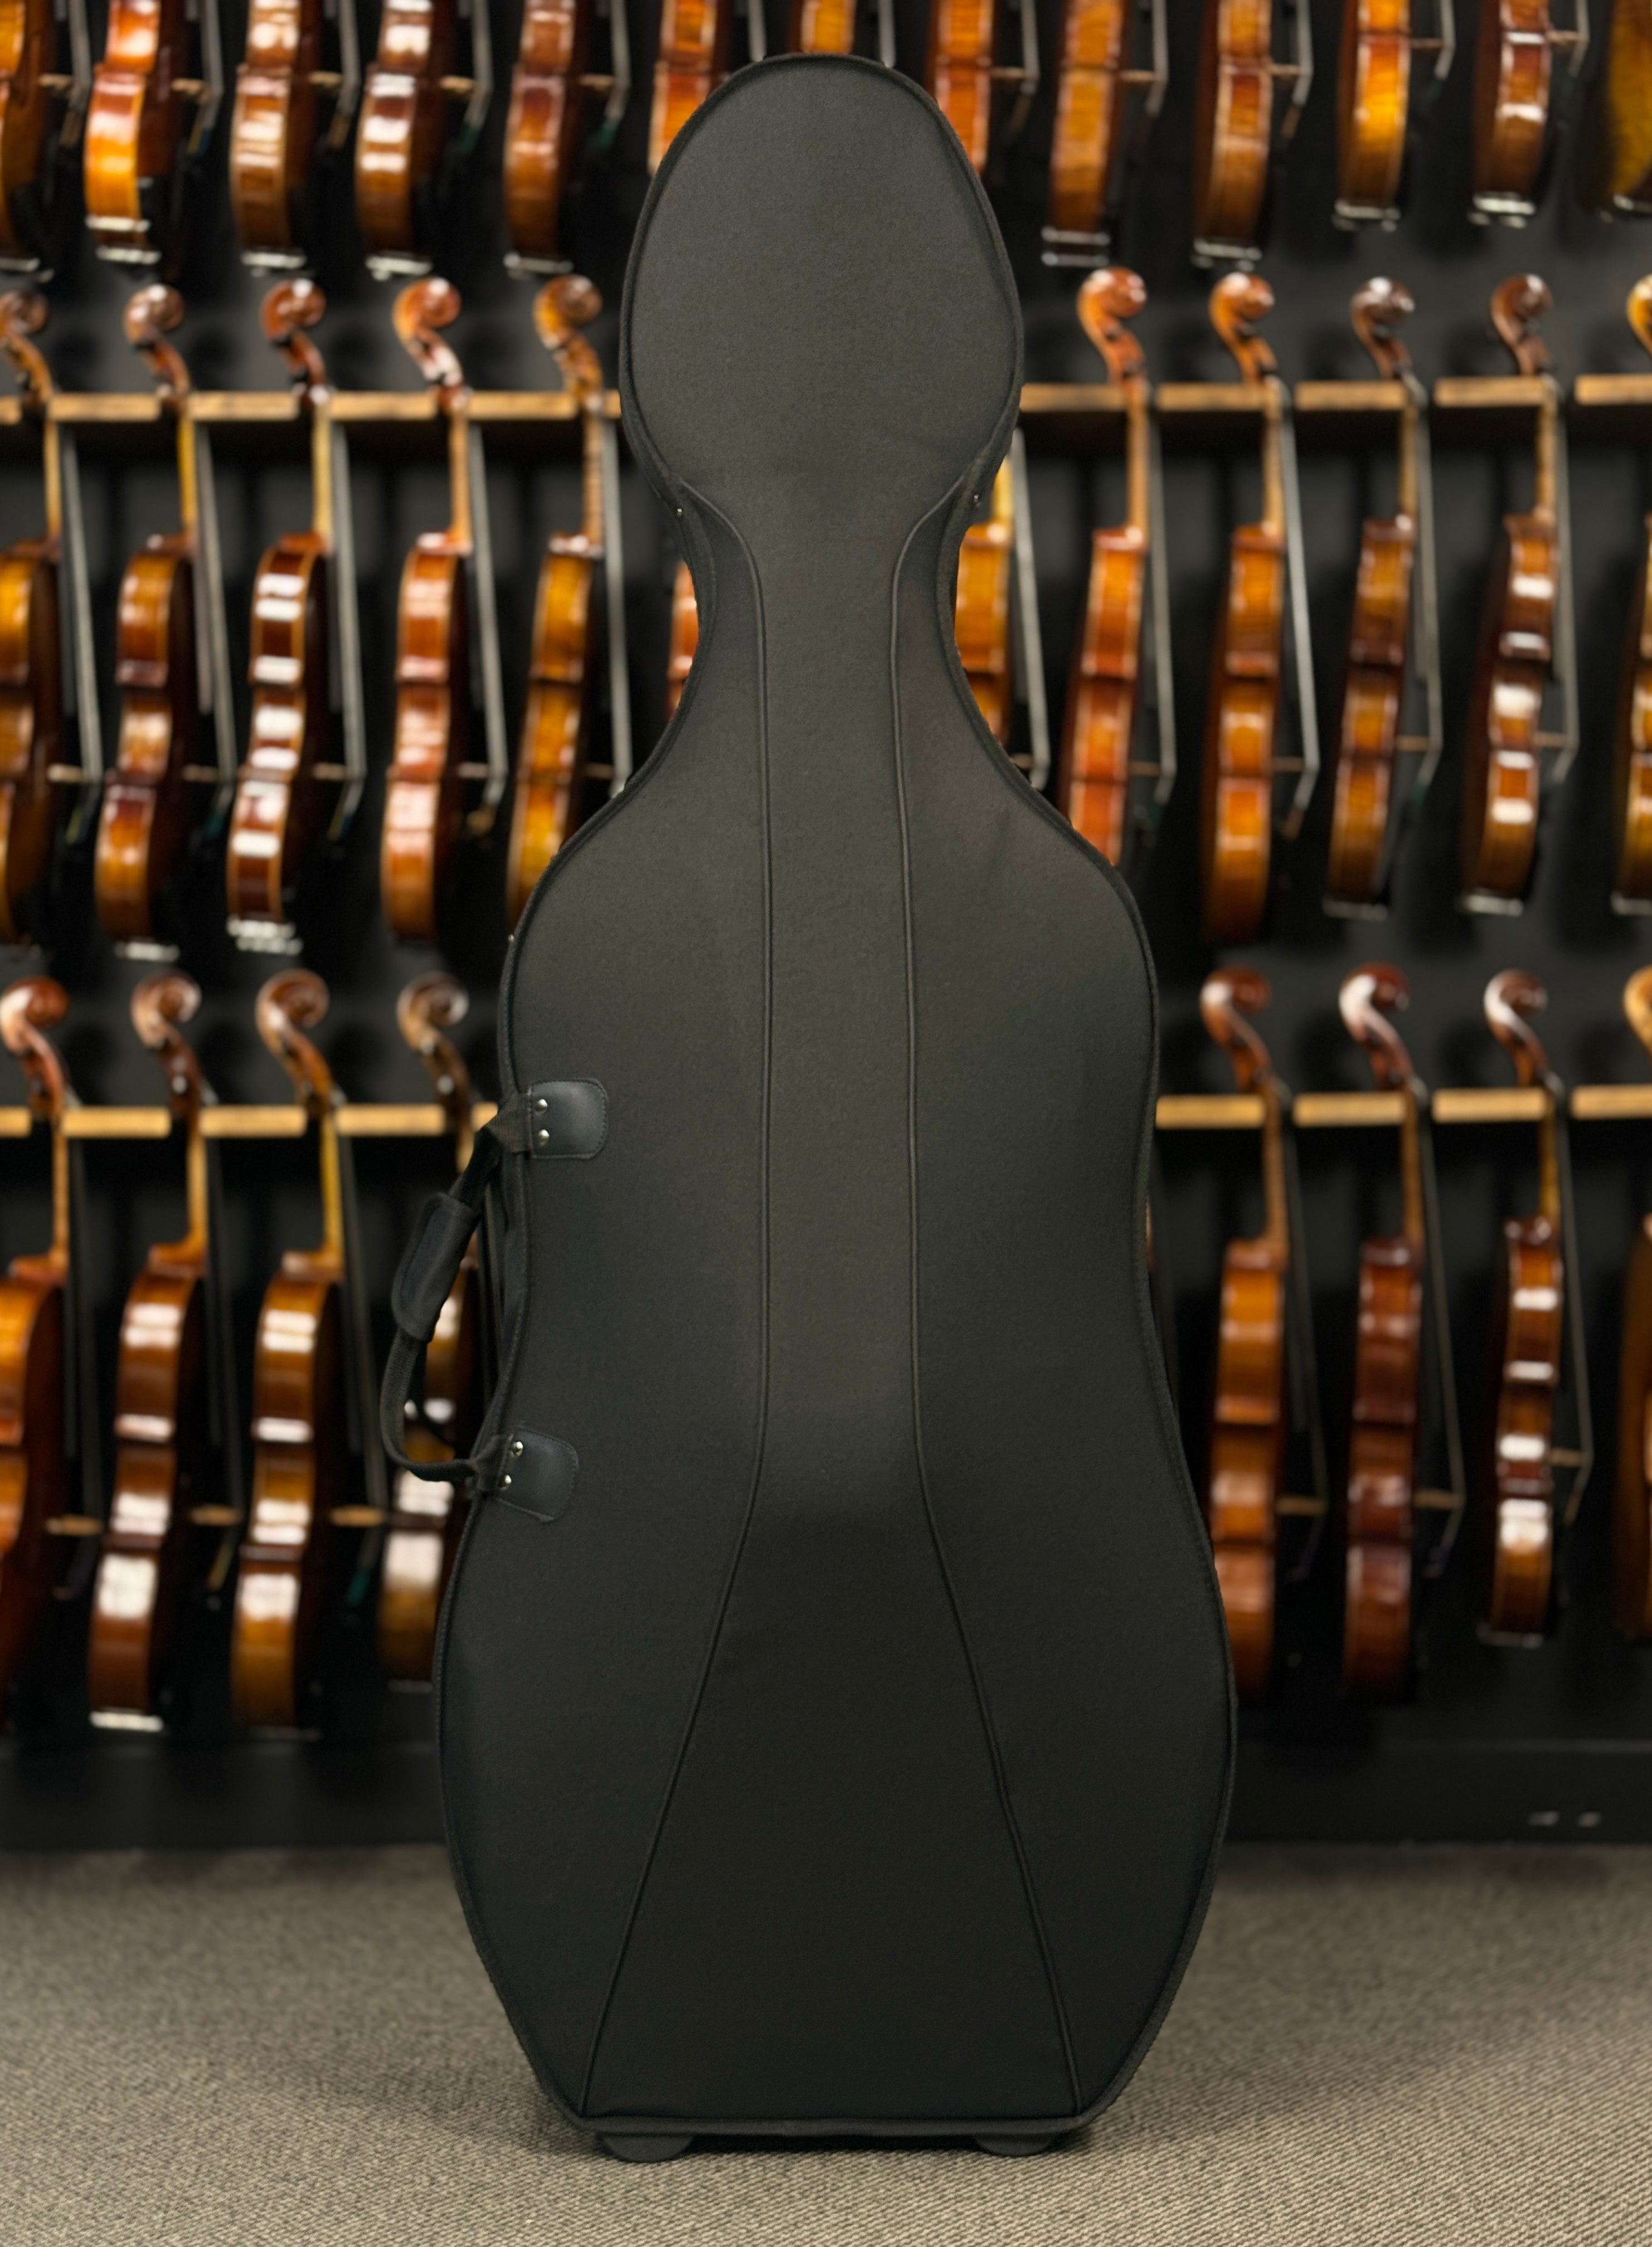 FS Cello Case Compressed Foam